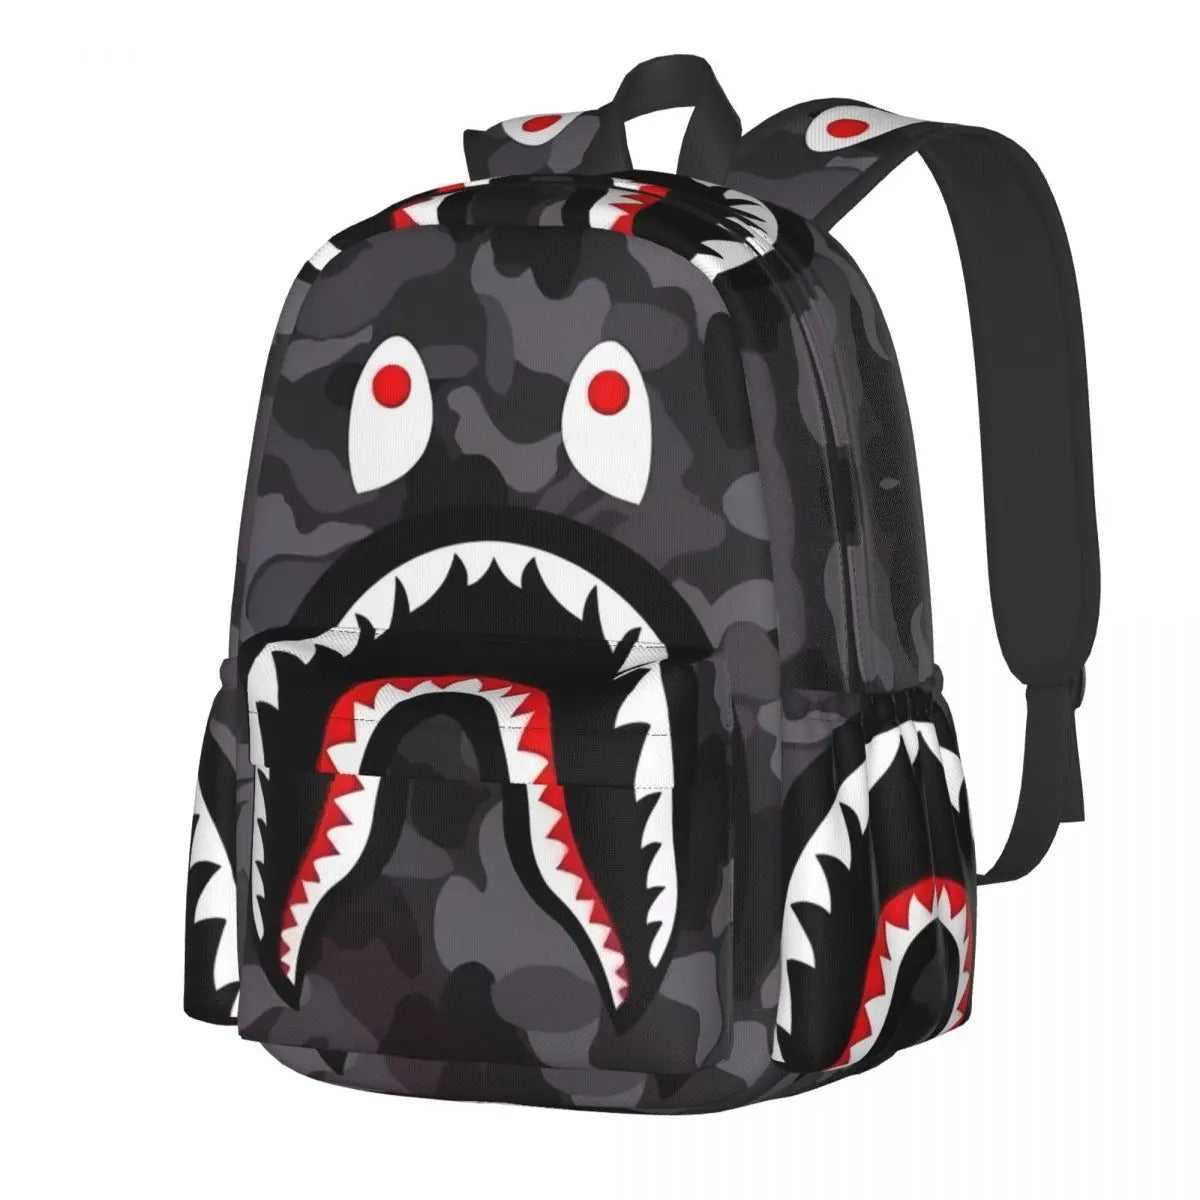 Designer Shark Backpack - 36x32x10cm